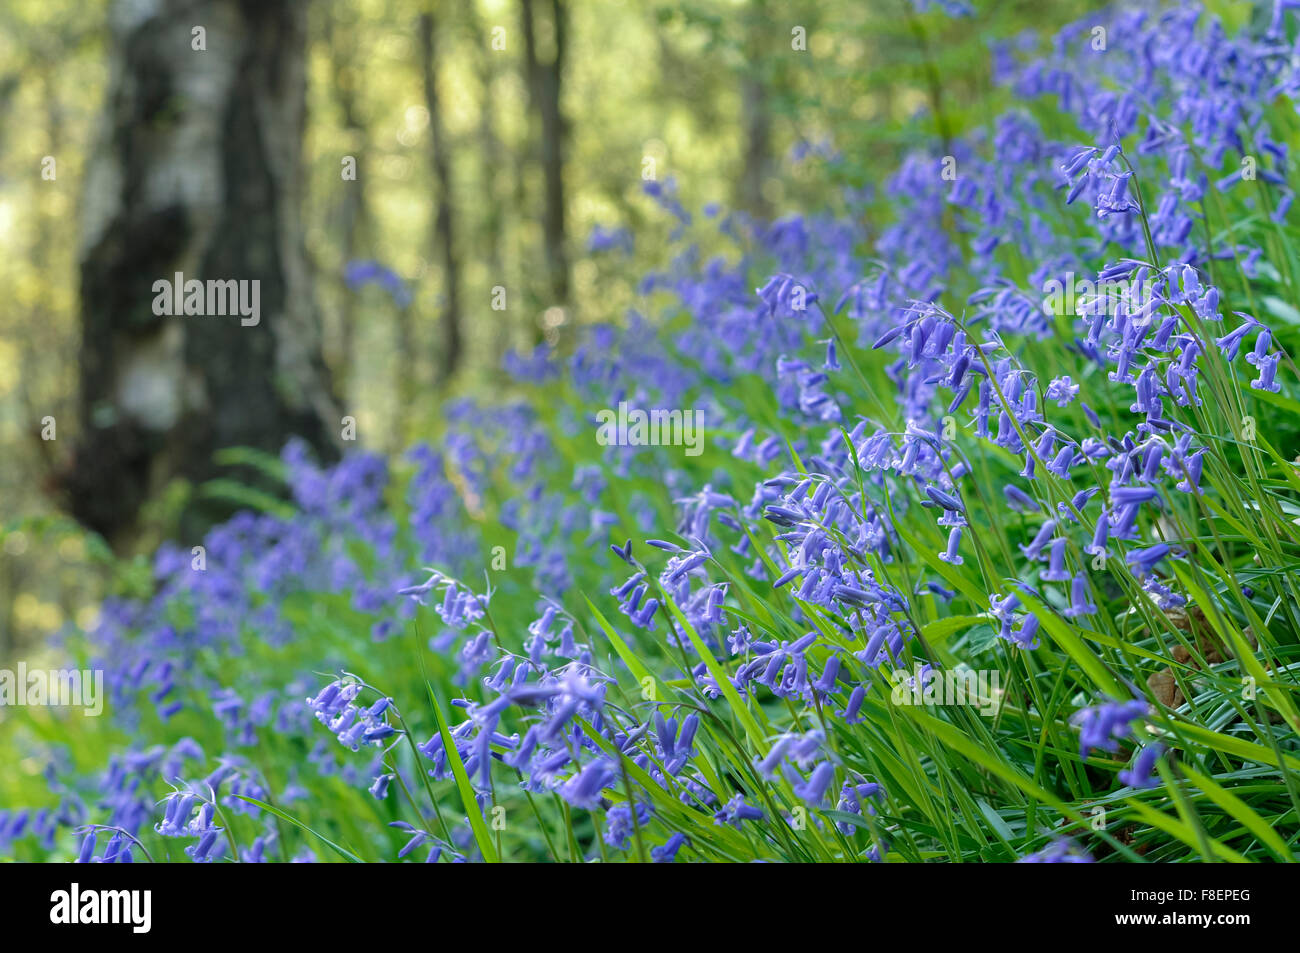 Belle masse de jacinthes des bois dans un anglais au printemps. Low angle view avec un fond vert. Banque D'Images